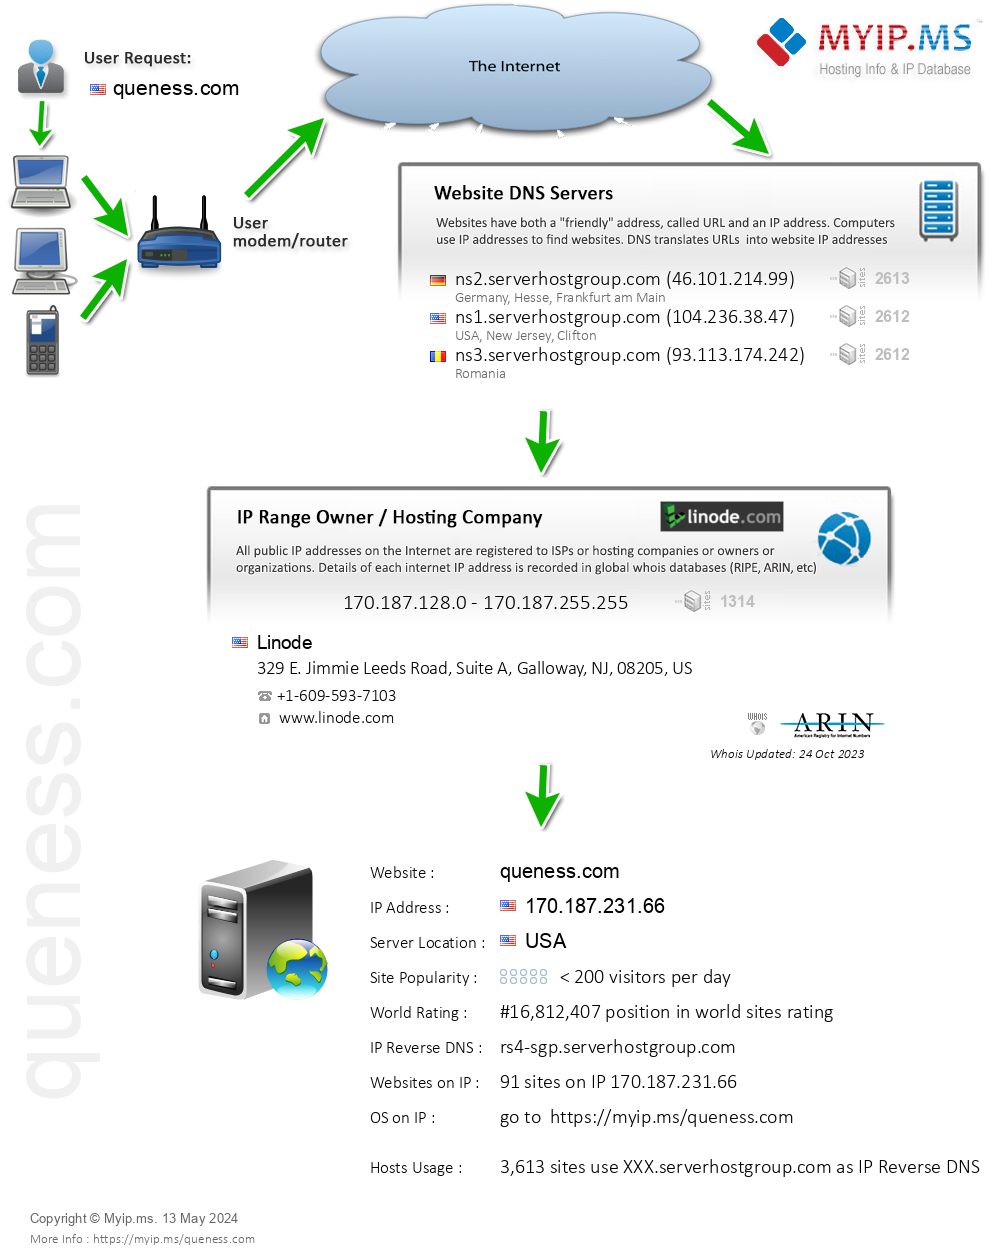 Queness.com - Website Hosting Visual IP Diagram